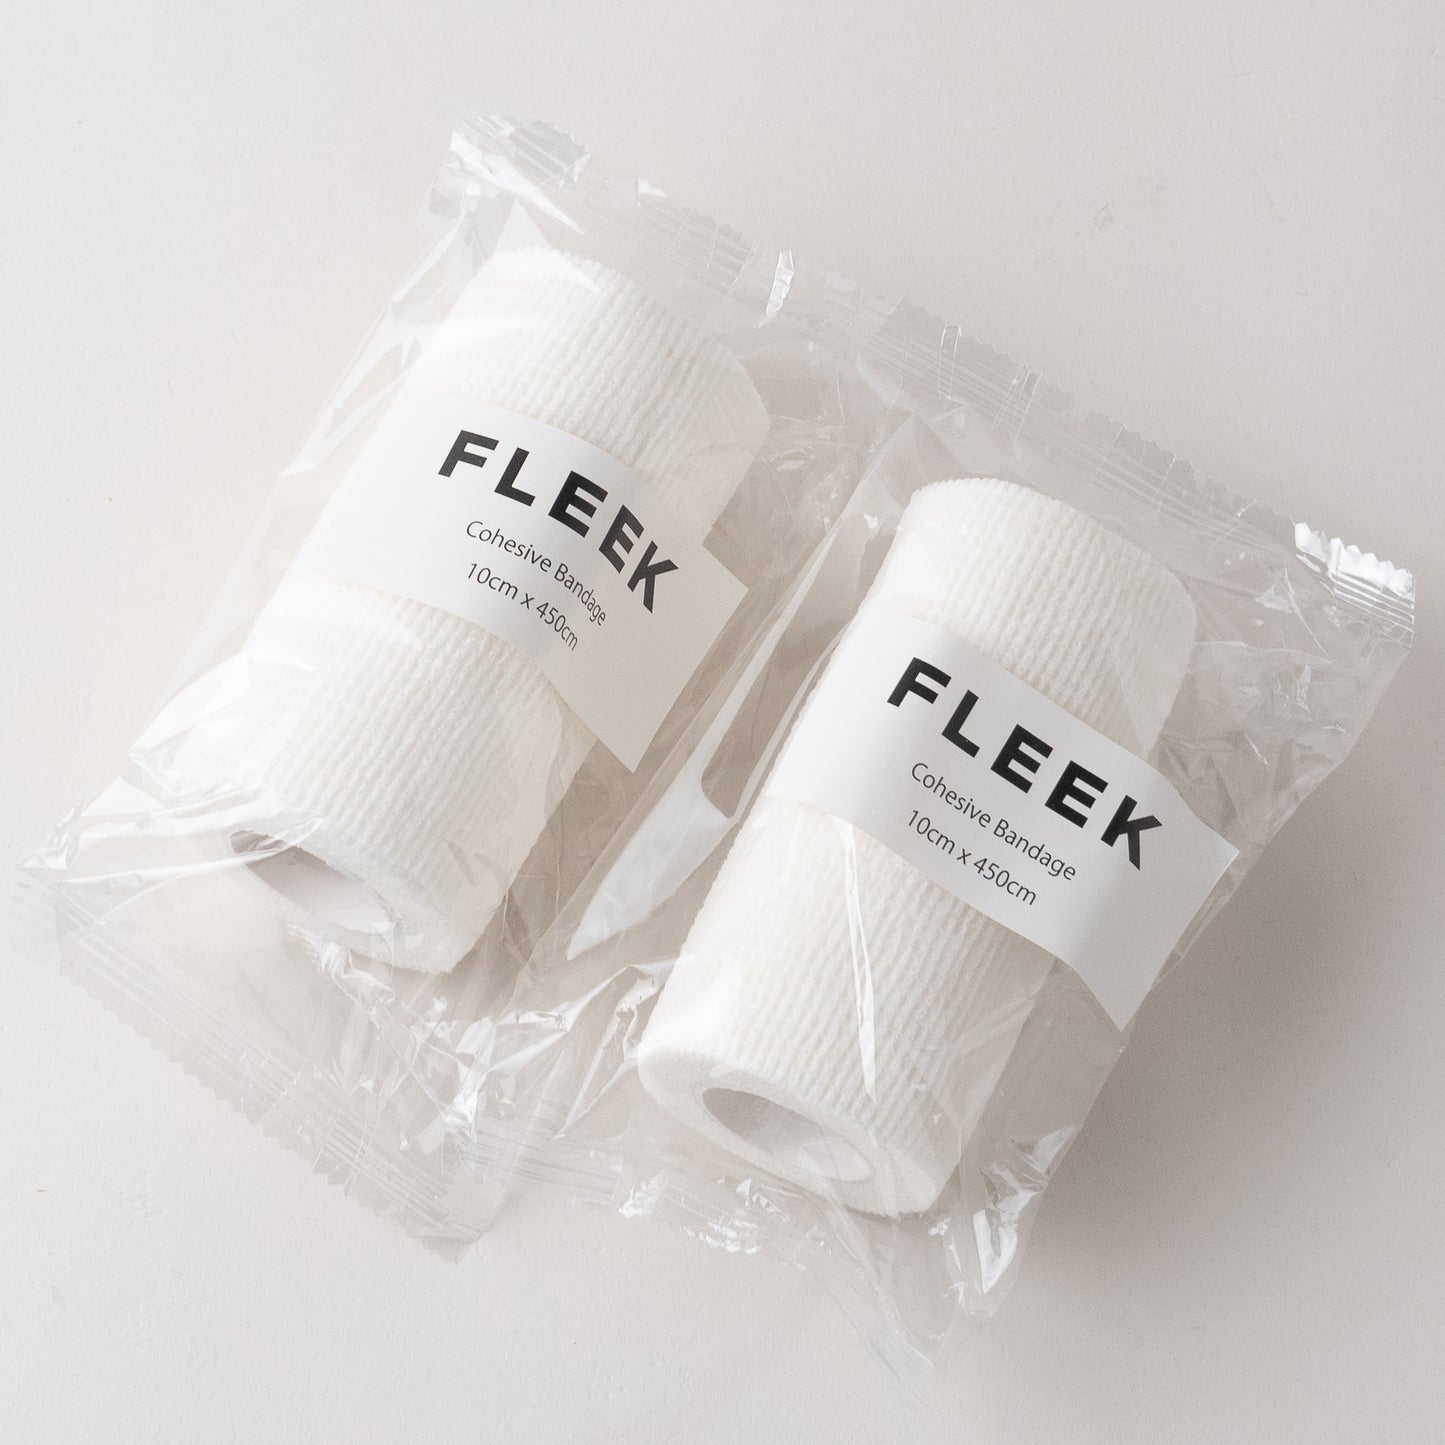 FLEEK フットボール マルチバンテージ ホワイト 自着式テープ 2本セット